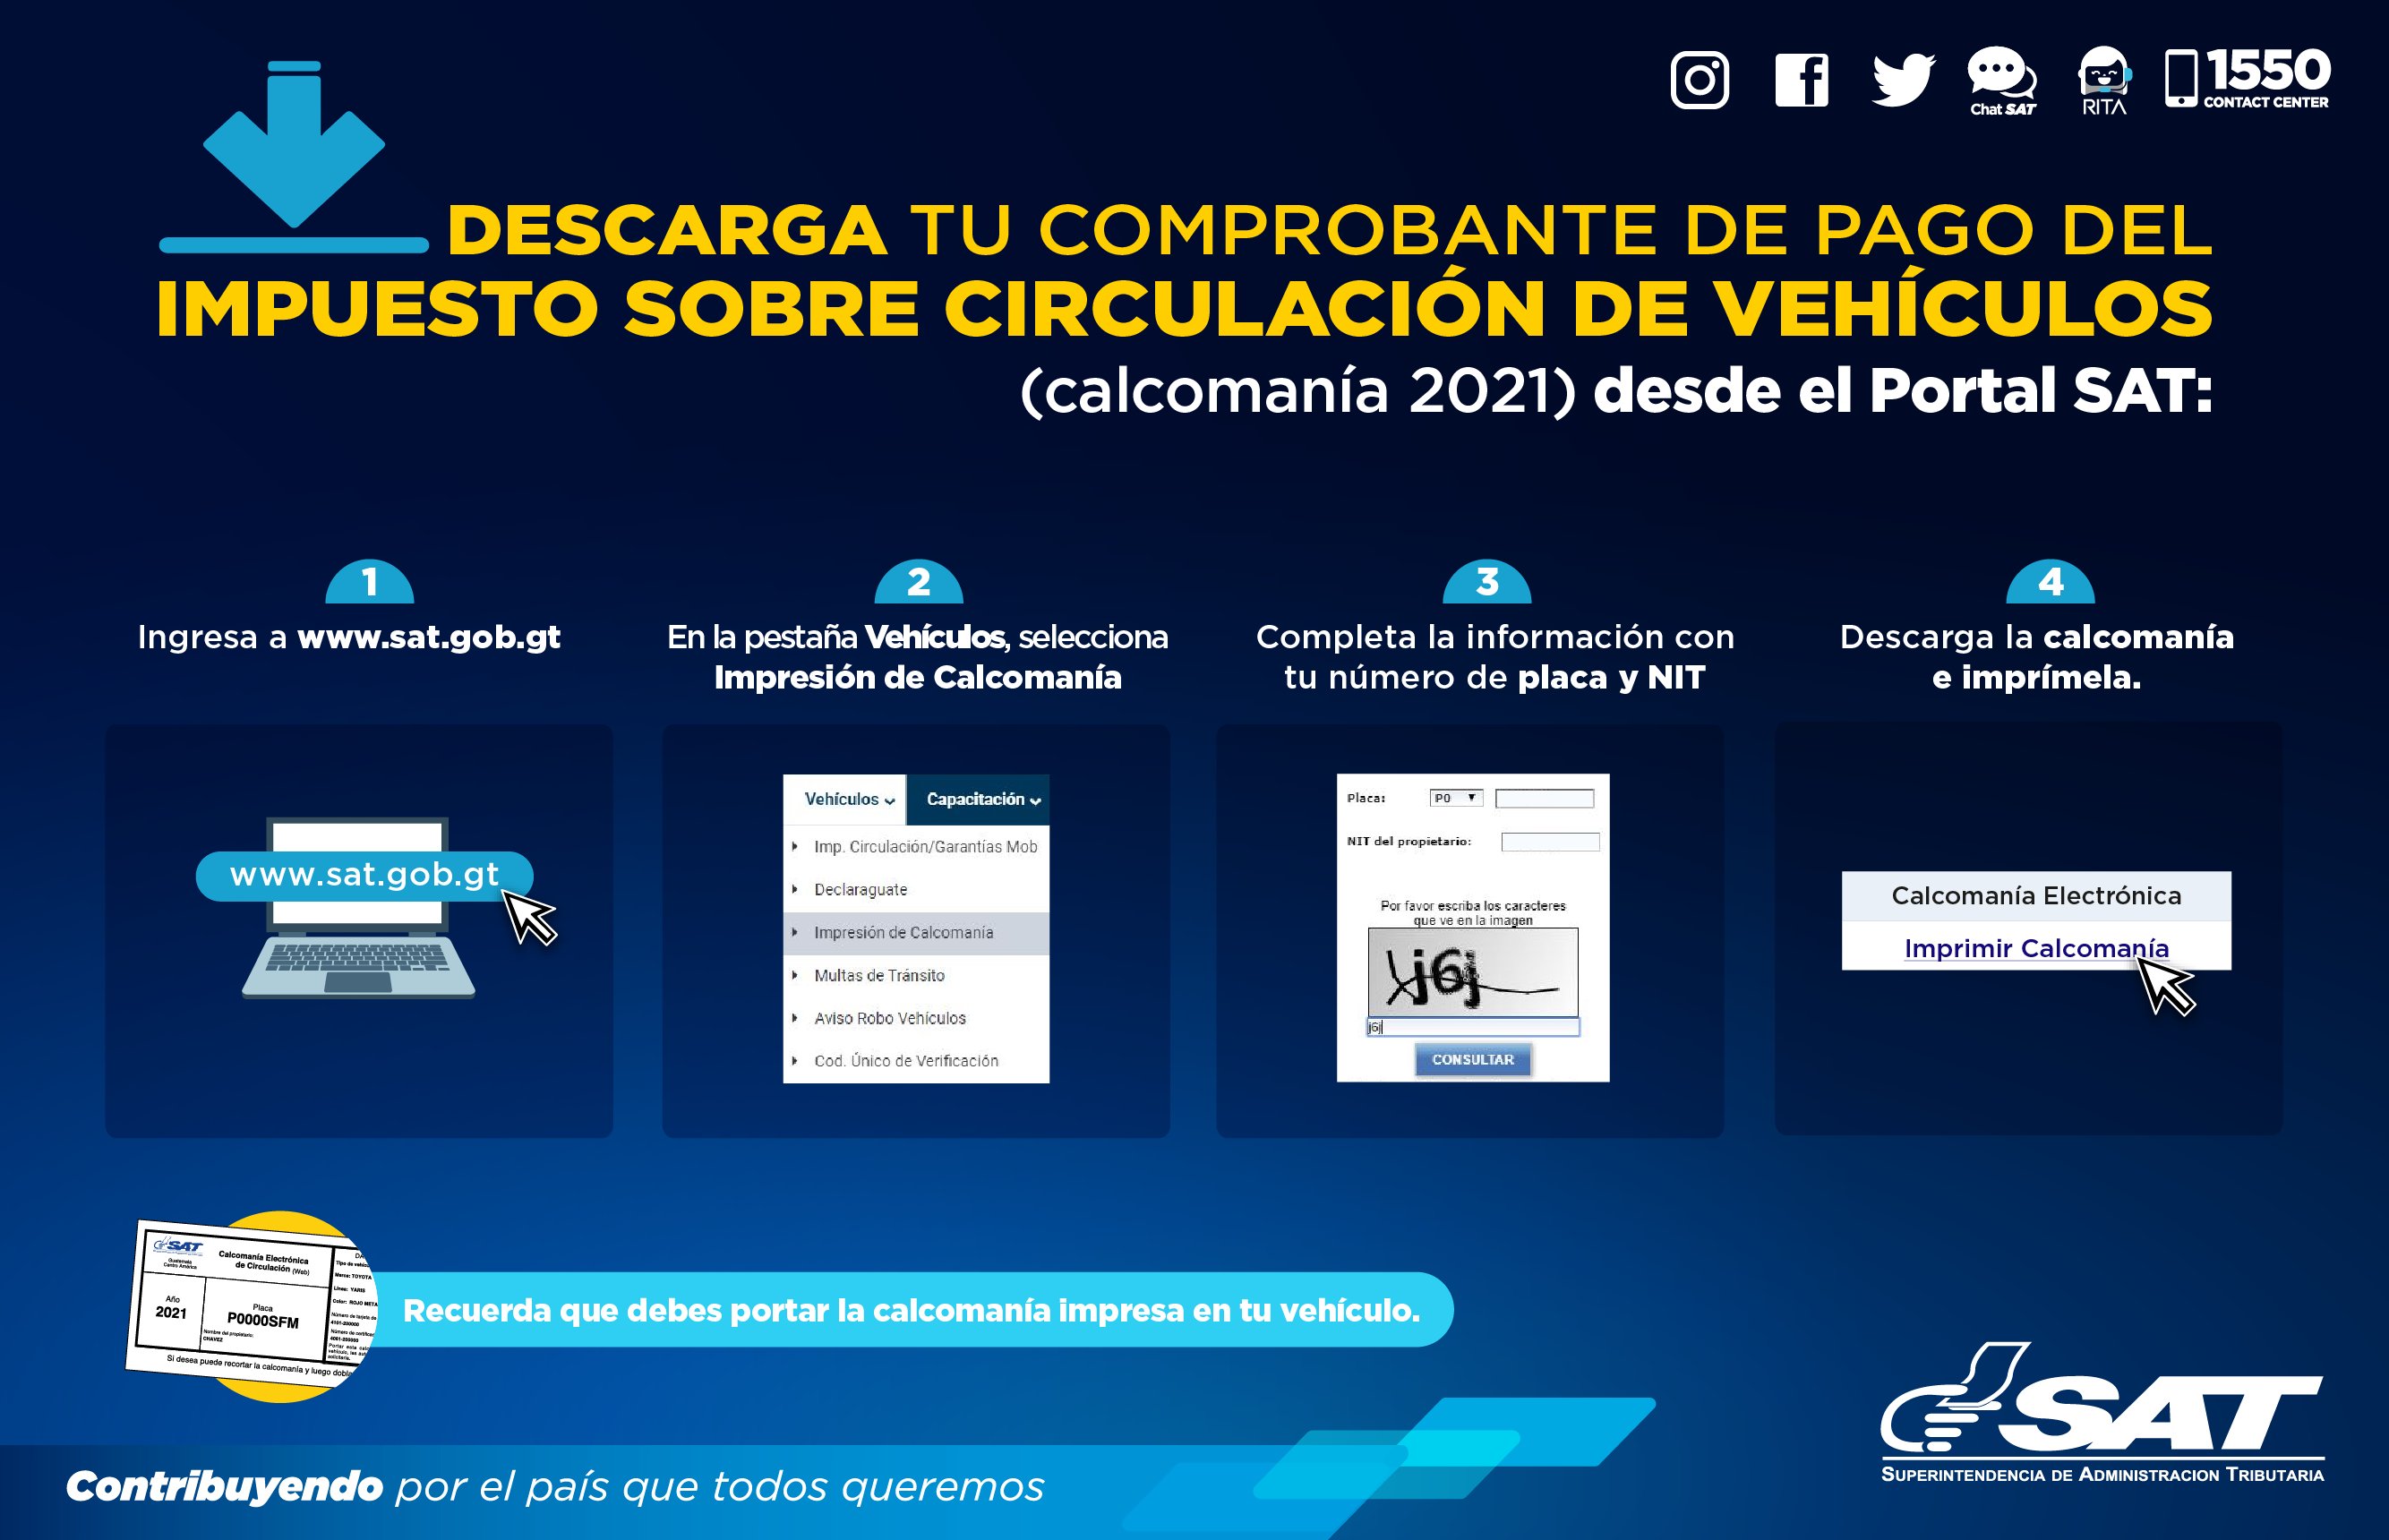 SAT Guatemala on Twitter: "Si ya pagaste el Impuesto Sobre Circulación de  Vehículos, descarga tu comprobante (calcomanía) desde el Portal SAT.  https://t.co/9wCnw1e51v" / Twitter